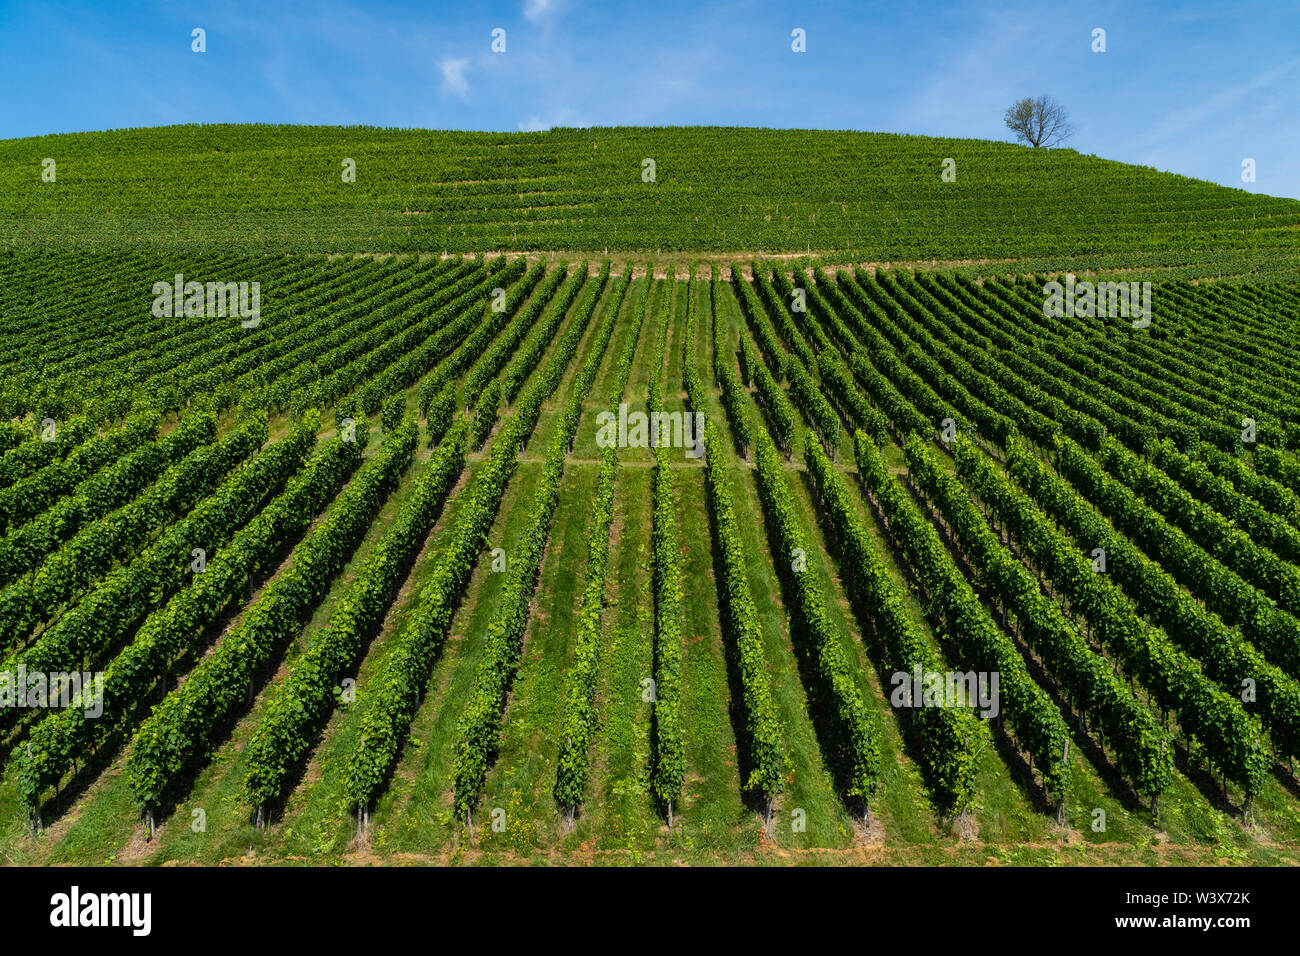 Tout droit d'un vignoble précis sur une colline, le ciel bleu et un arbre solitaire sur le dessus - agriculture - vue oblique Banque D'Images